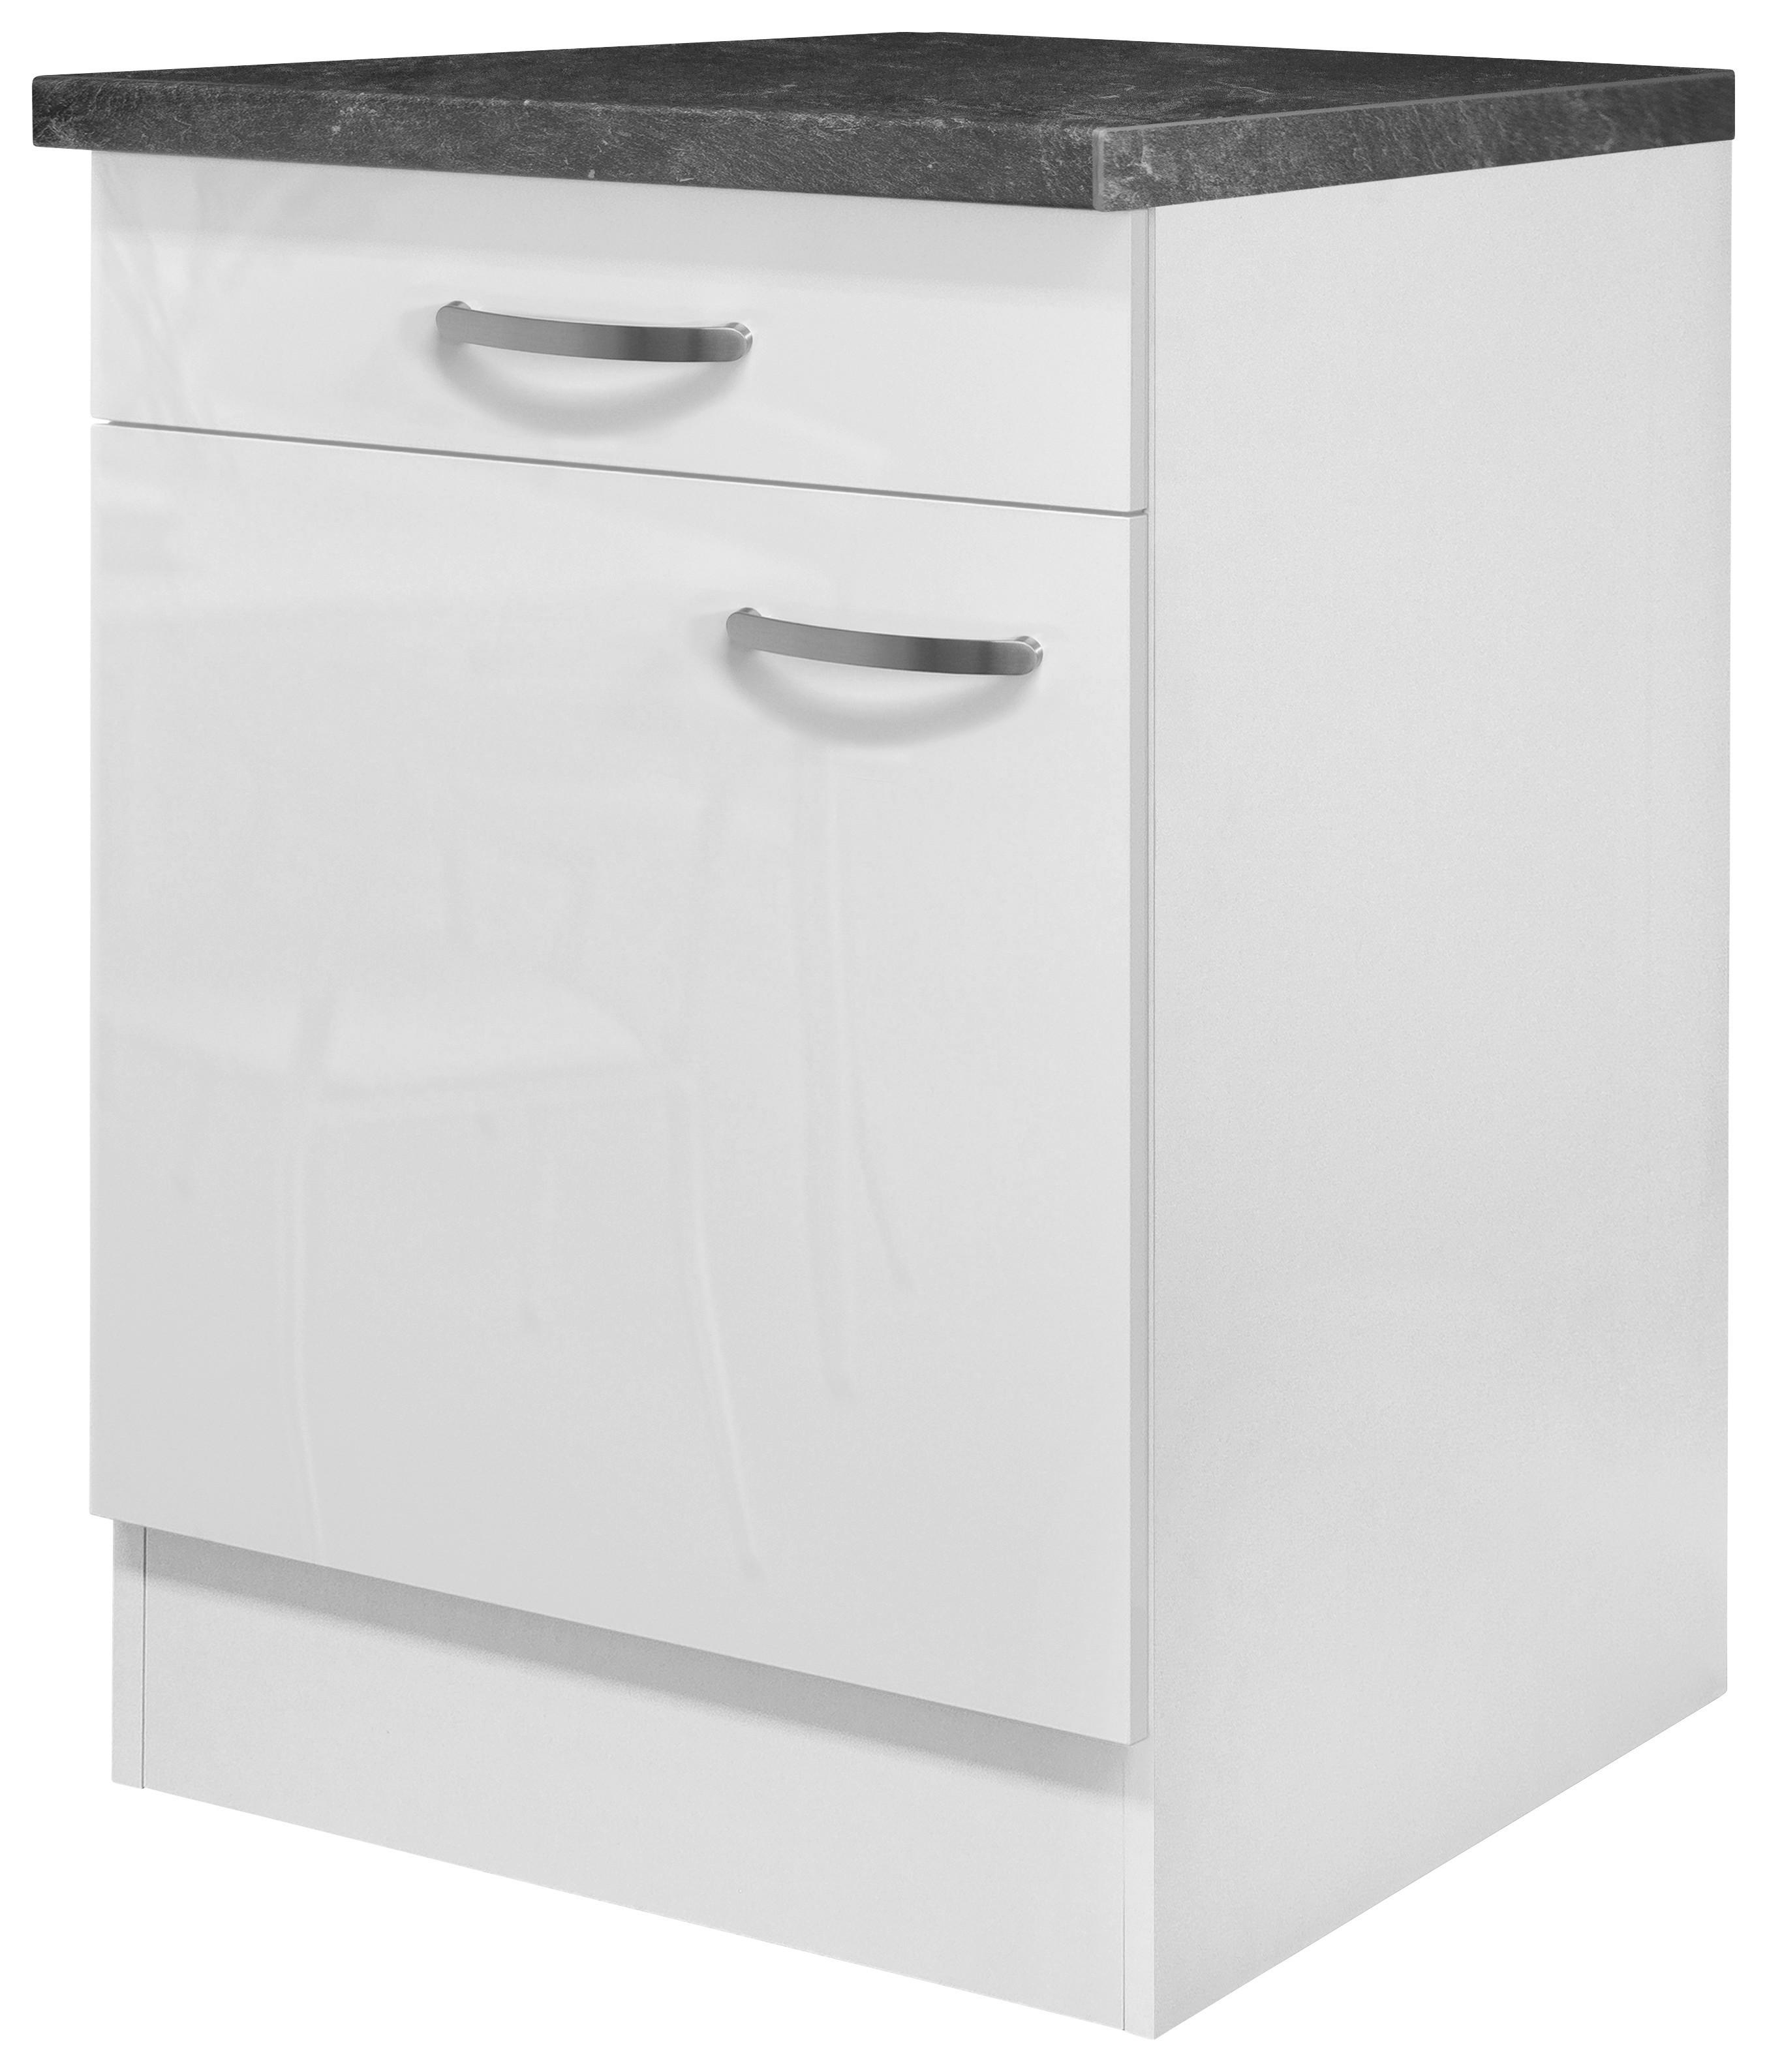 Küchenunterschrank Alba B: 60 cm Weiß/Schiefer mit Lade - Weiß, MODERN, Holzwerkstoff (60/86/57cm)